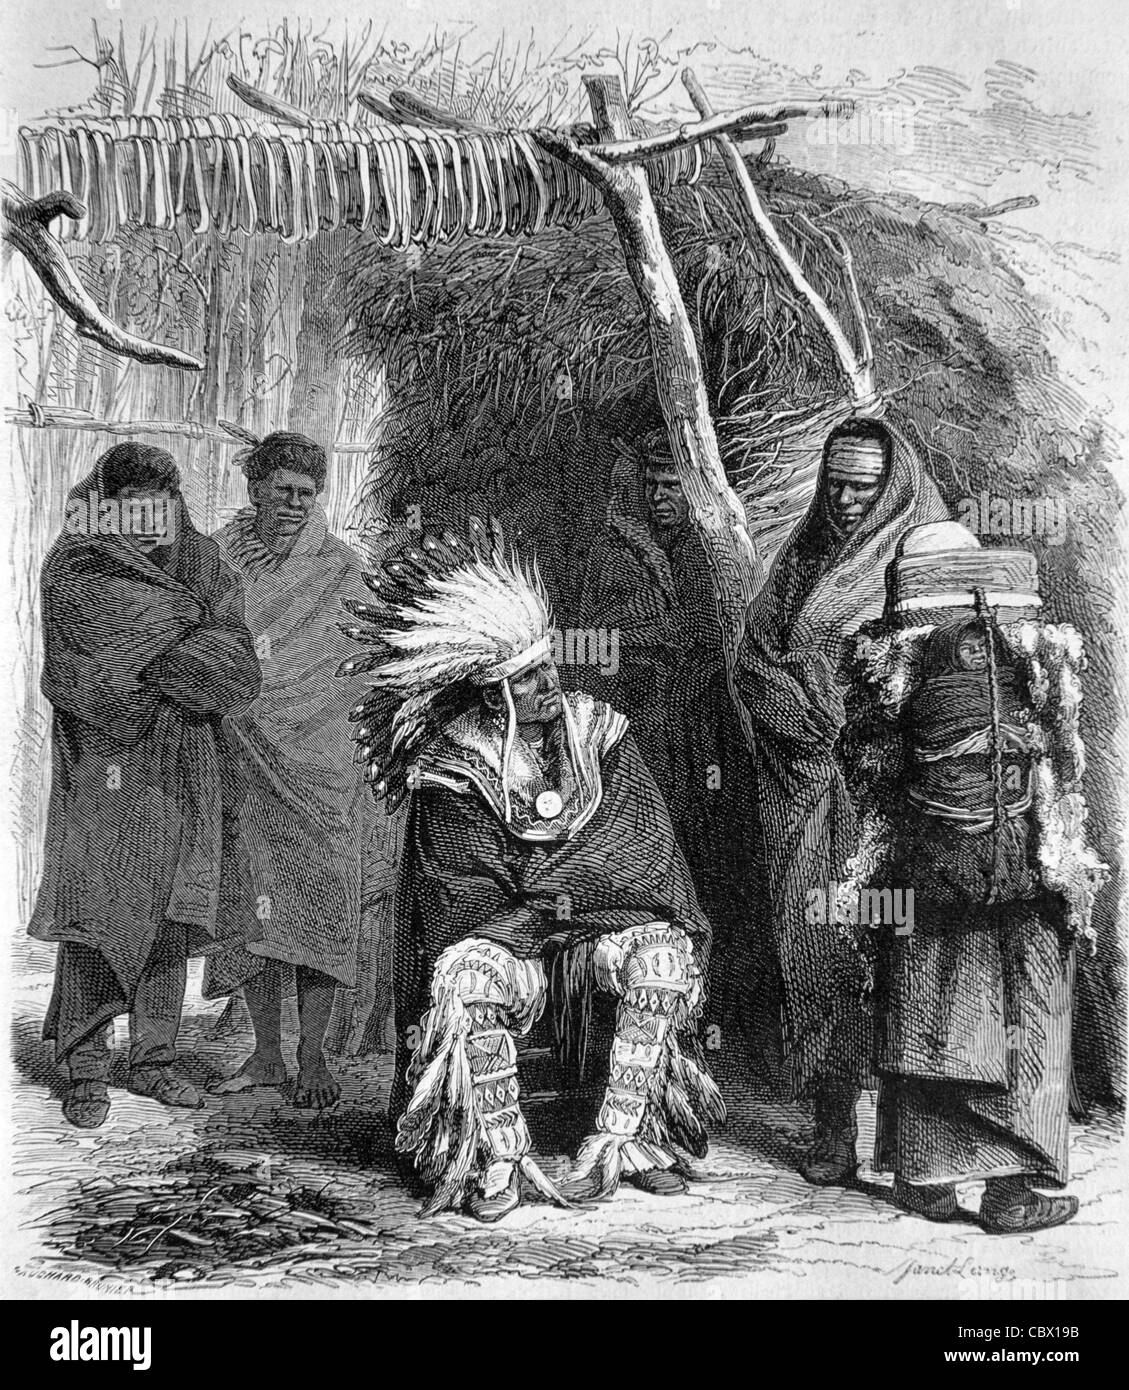 Pawnee Chief & Indianerfrauen in traditionellem Kostüm außerhalb von Tipi, Tepee oder Teepee, 1868 Gravur oder Vintage Illustration Stockfoto